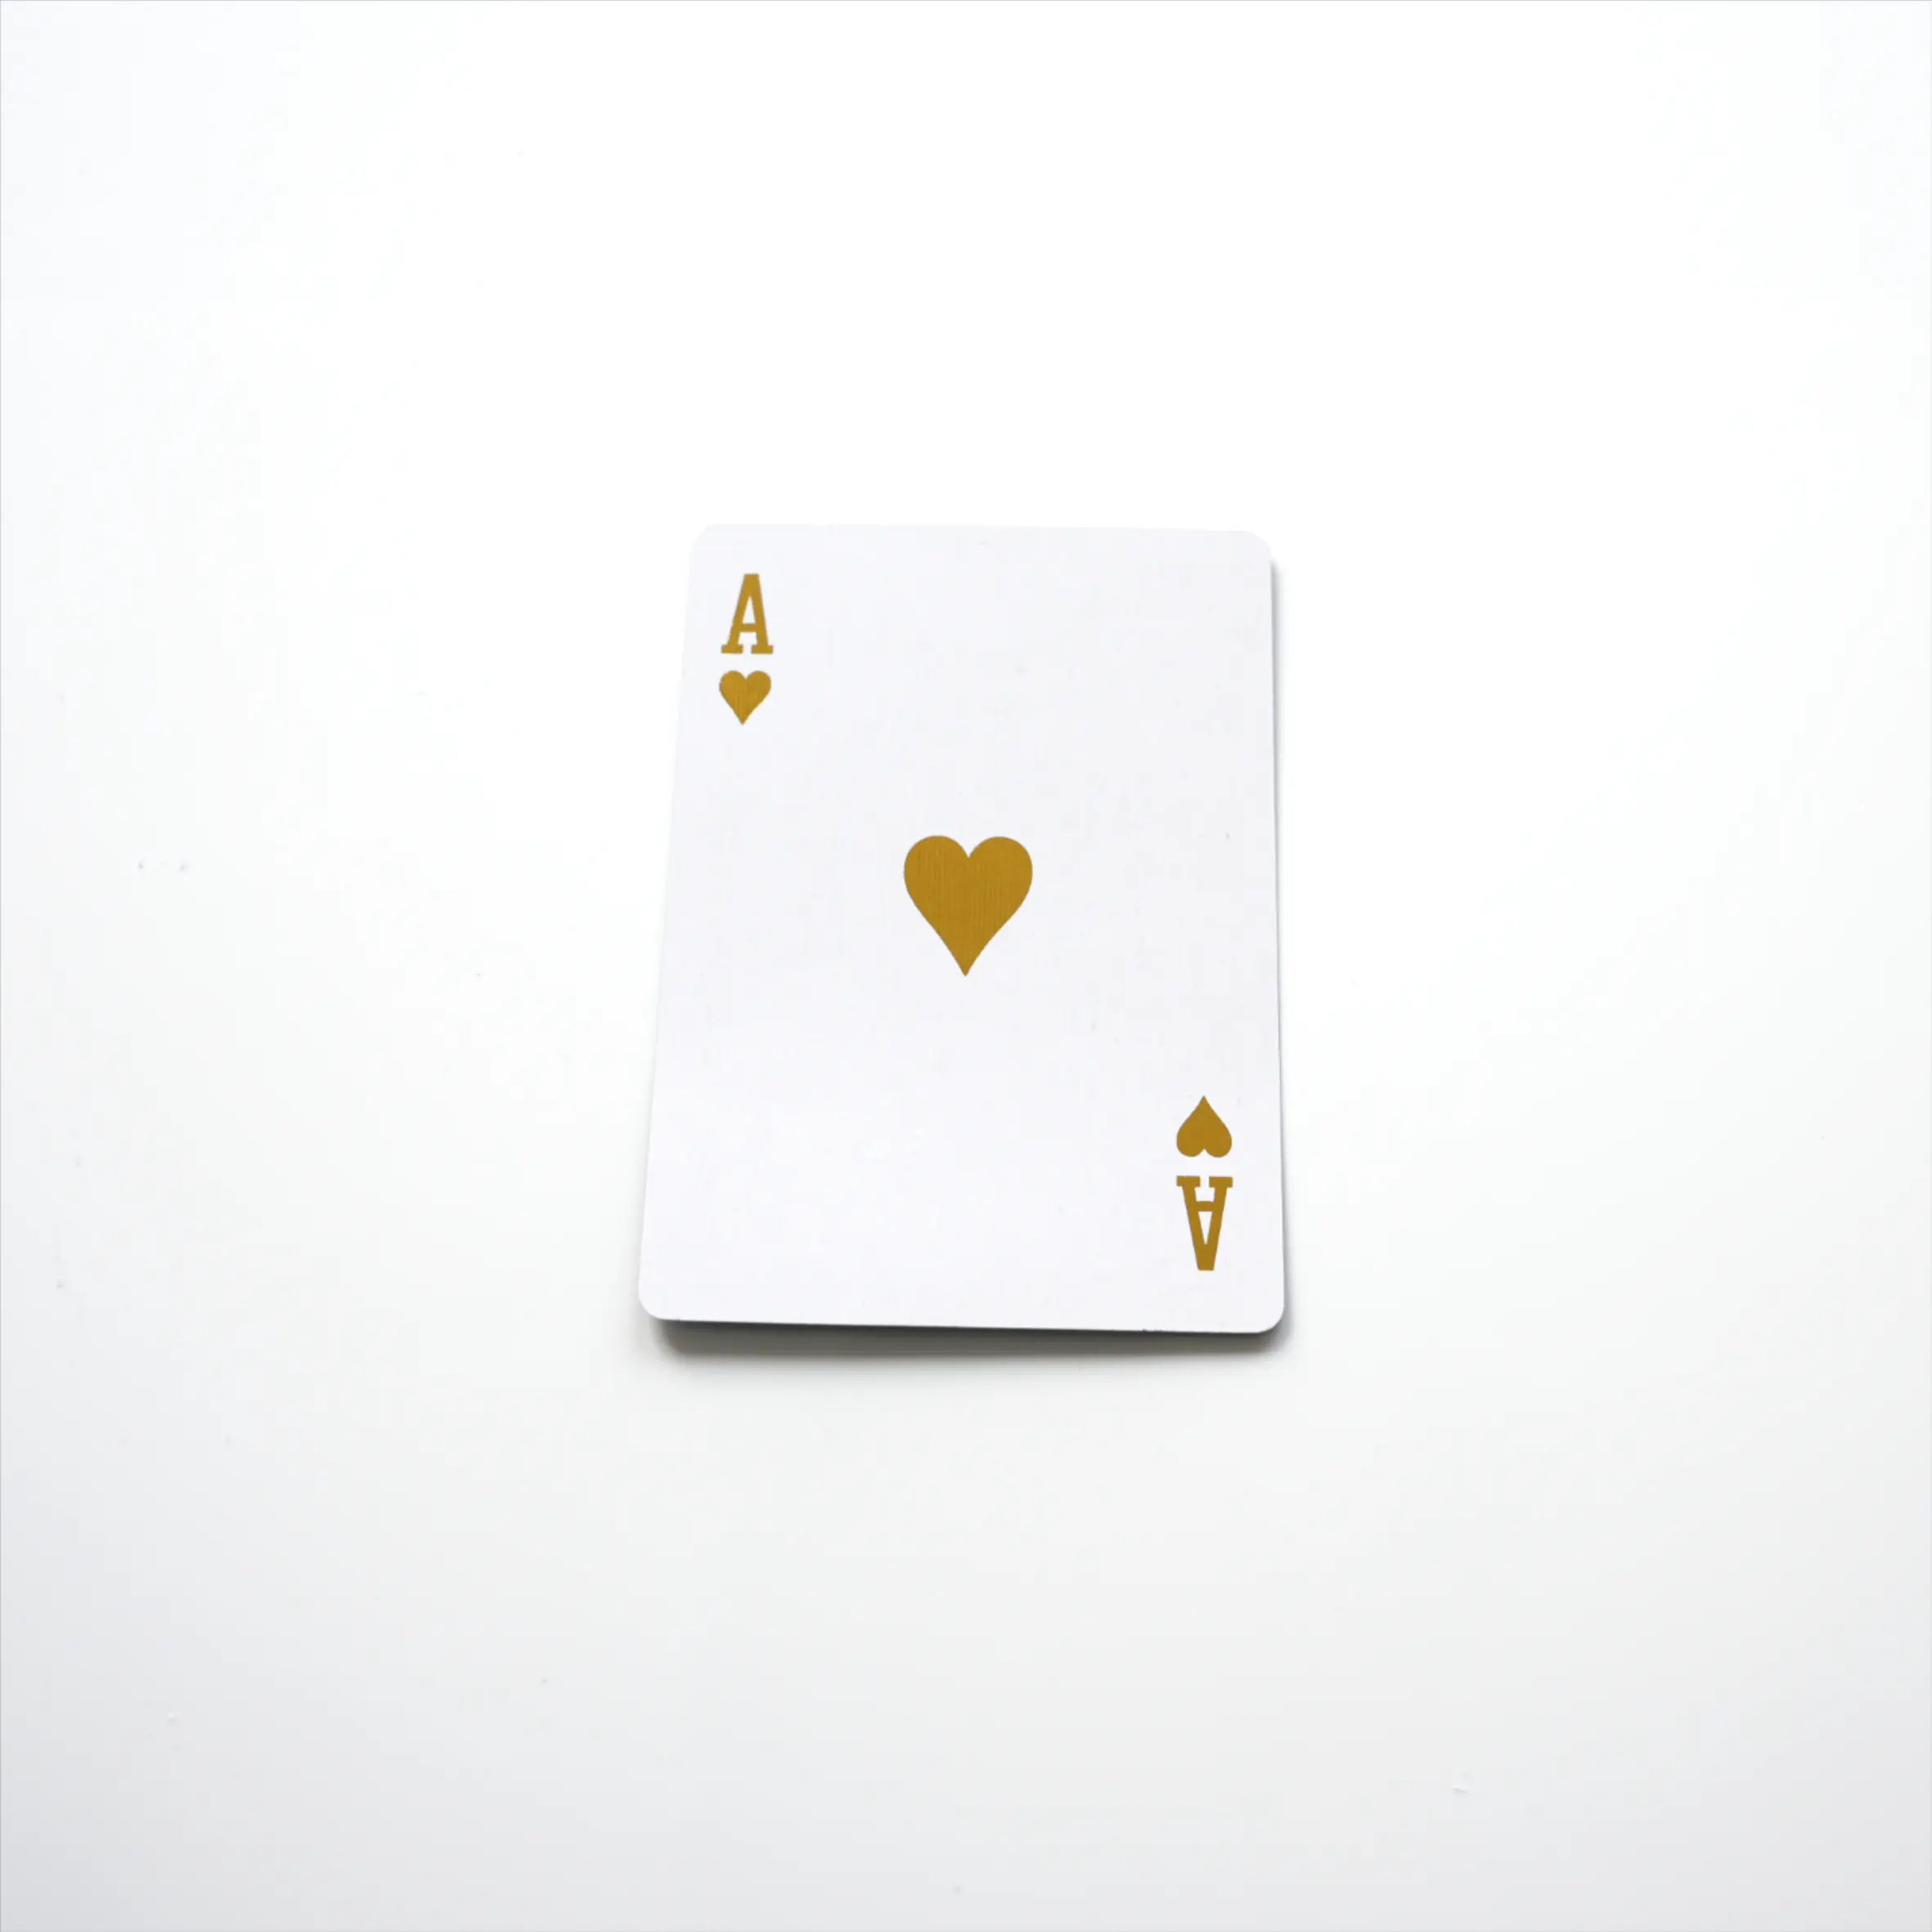 Meilleure qualité 3d papier carton jeu original trading/ bridge/bulk/bussiness cartes à jouer au poker pour enfants/adultes